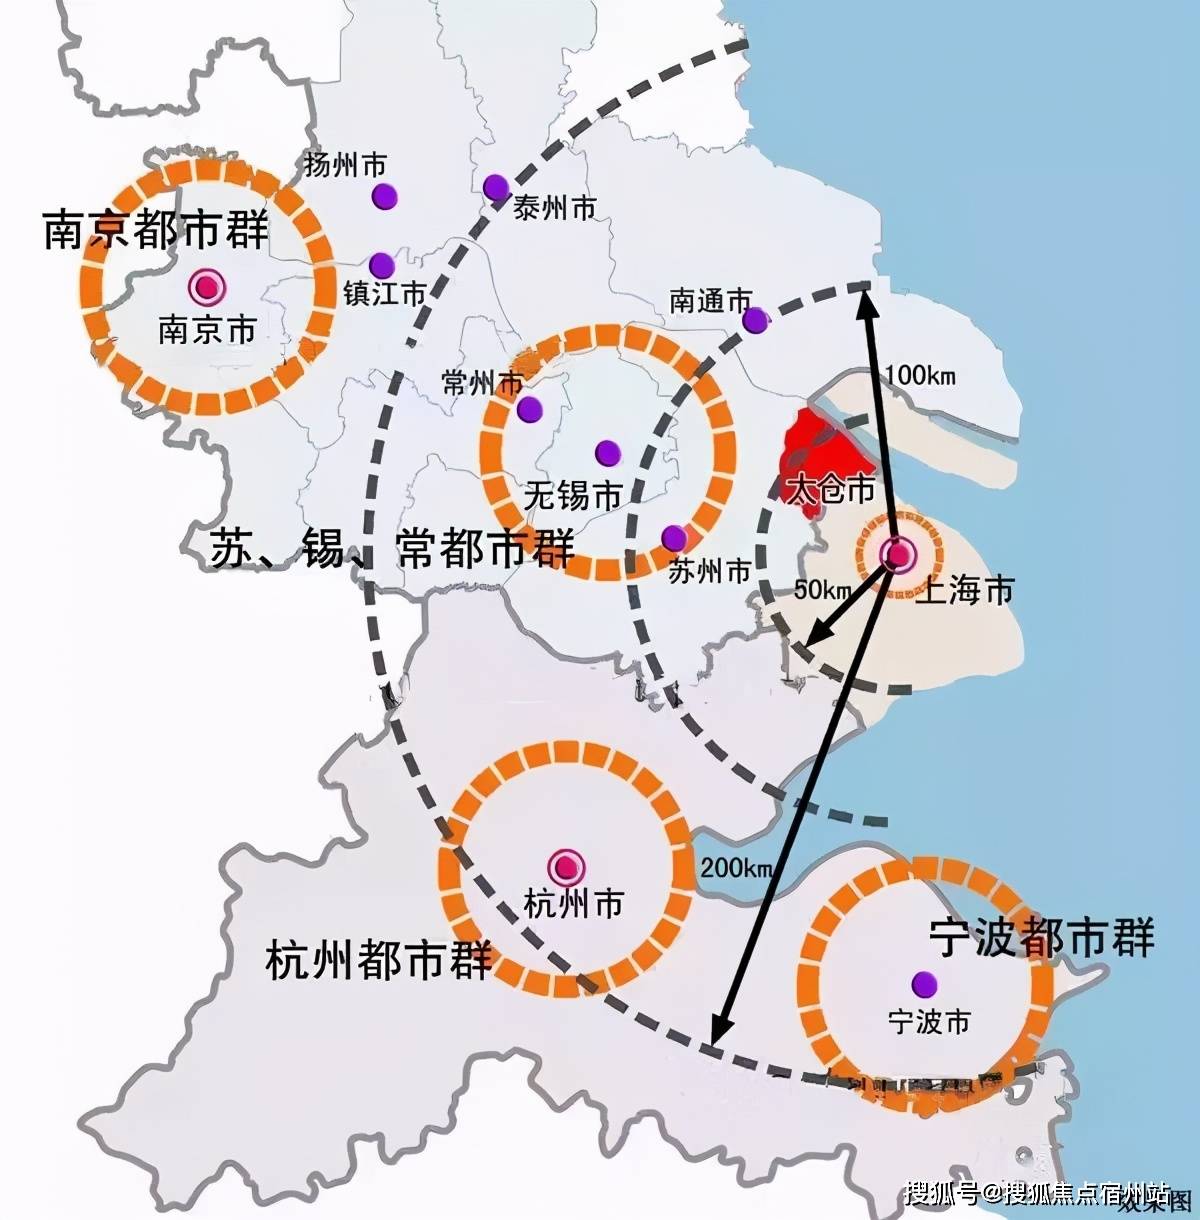 作为六大城市群之一,中国一大经济区,长三角城市群是一带一路与长江